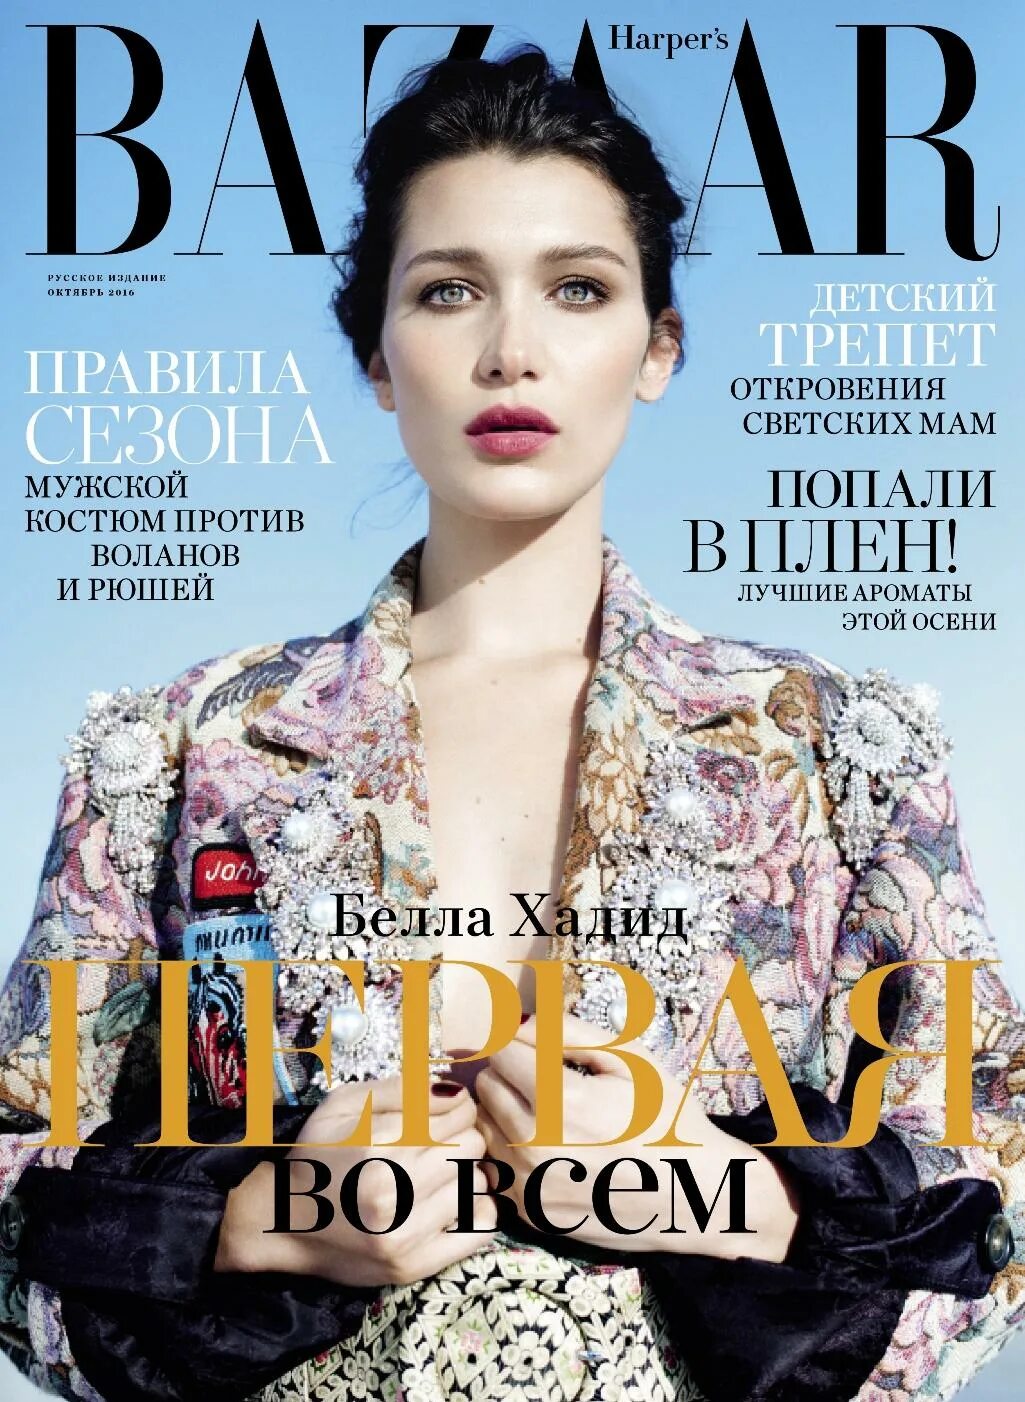 Обложка Harper's Bazaar Россия.